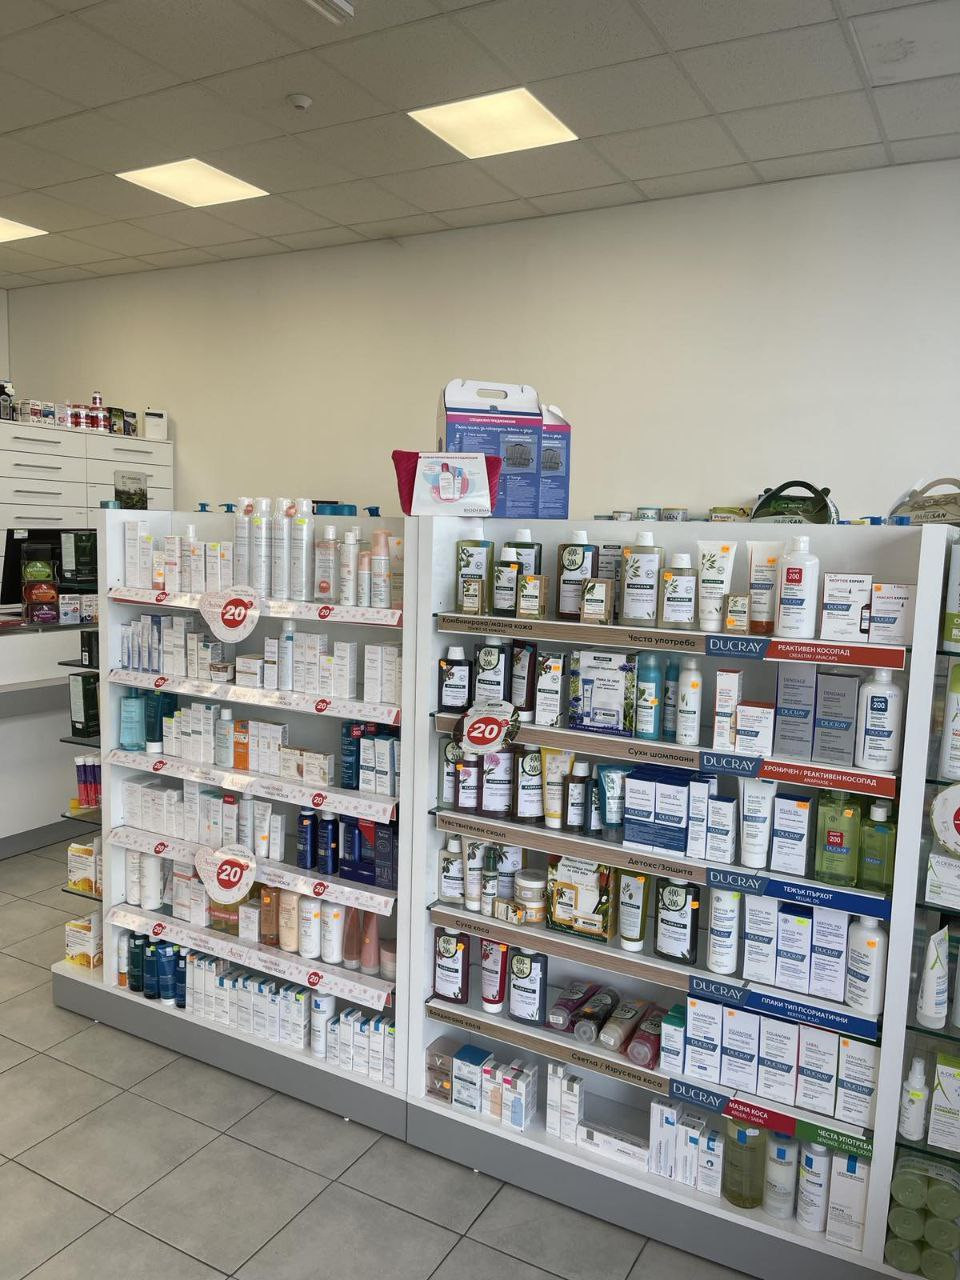 Нова аптека “Стела” отвори врати на бул. “Ботевградско шосе” в столицата, обещавайки атрактивни цени, професионално обслужване и разнообразие от най-добрите продукти на пазара - Снимка 5